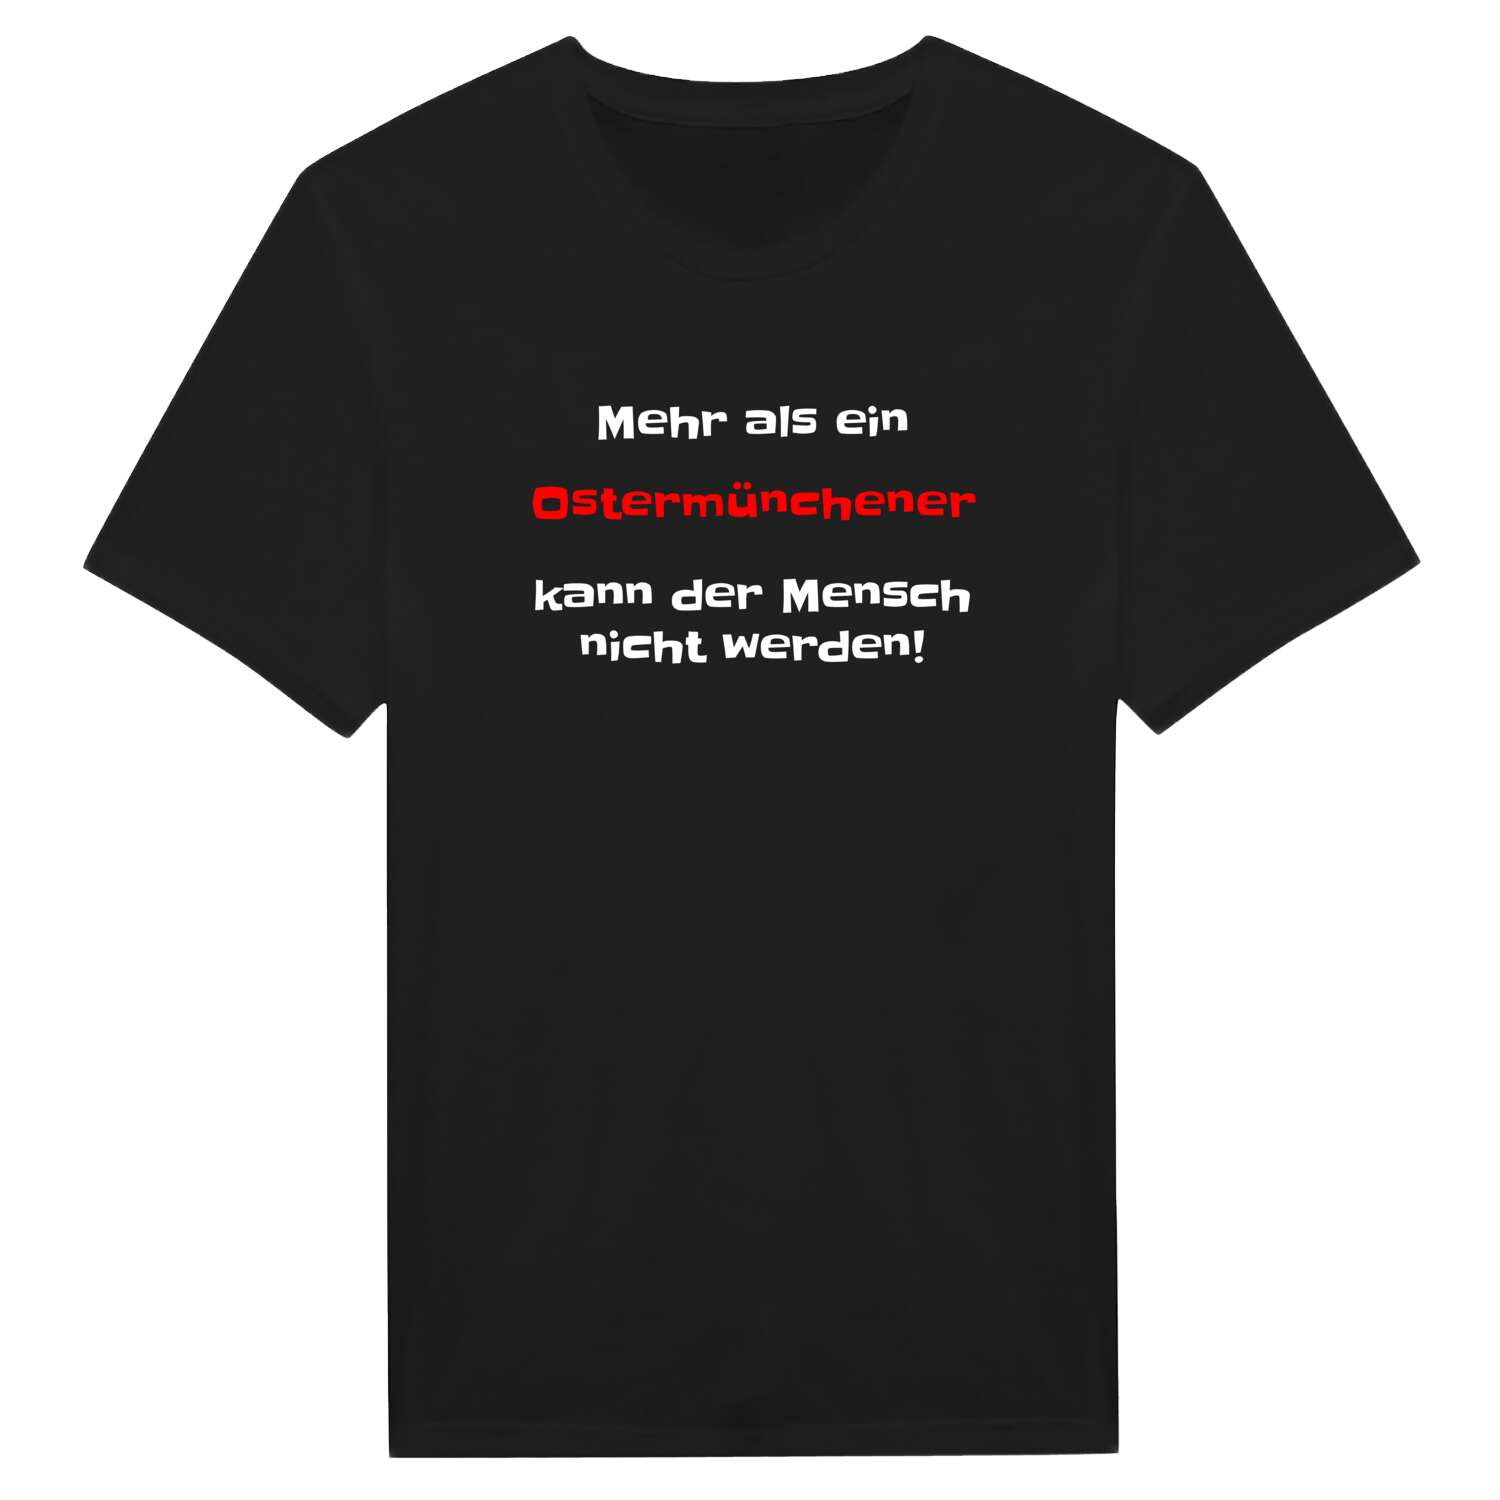 Ostermünchen T-Shirt »Mehr als ein«